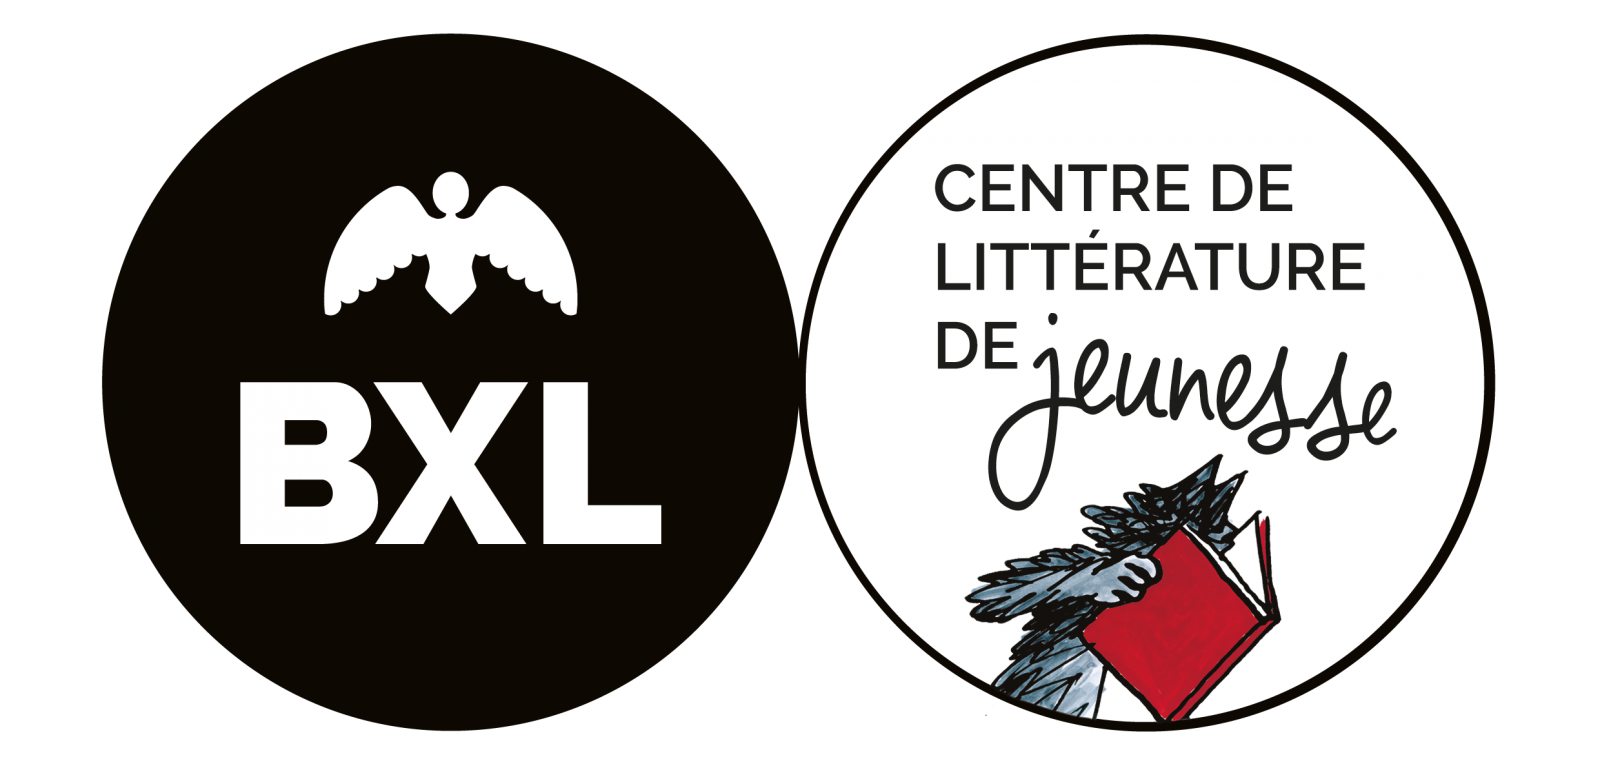 deux ronds avec le logo du Centre de littérature de jeunesse (l'un noir, l'autre blanc) 